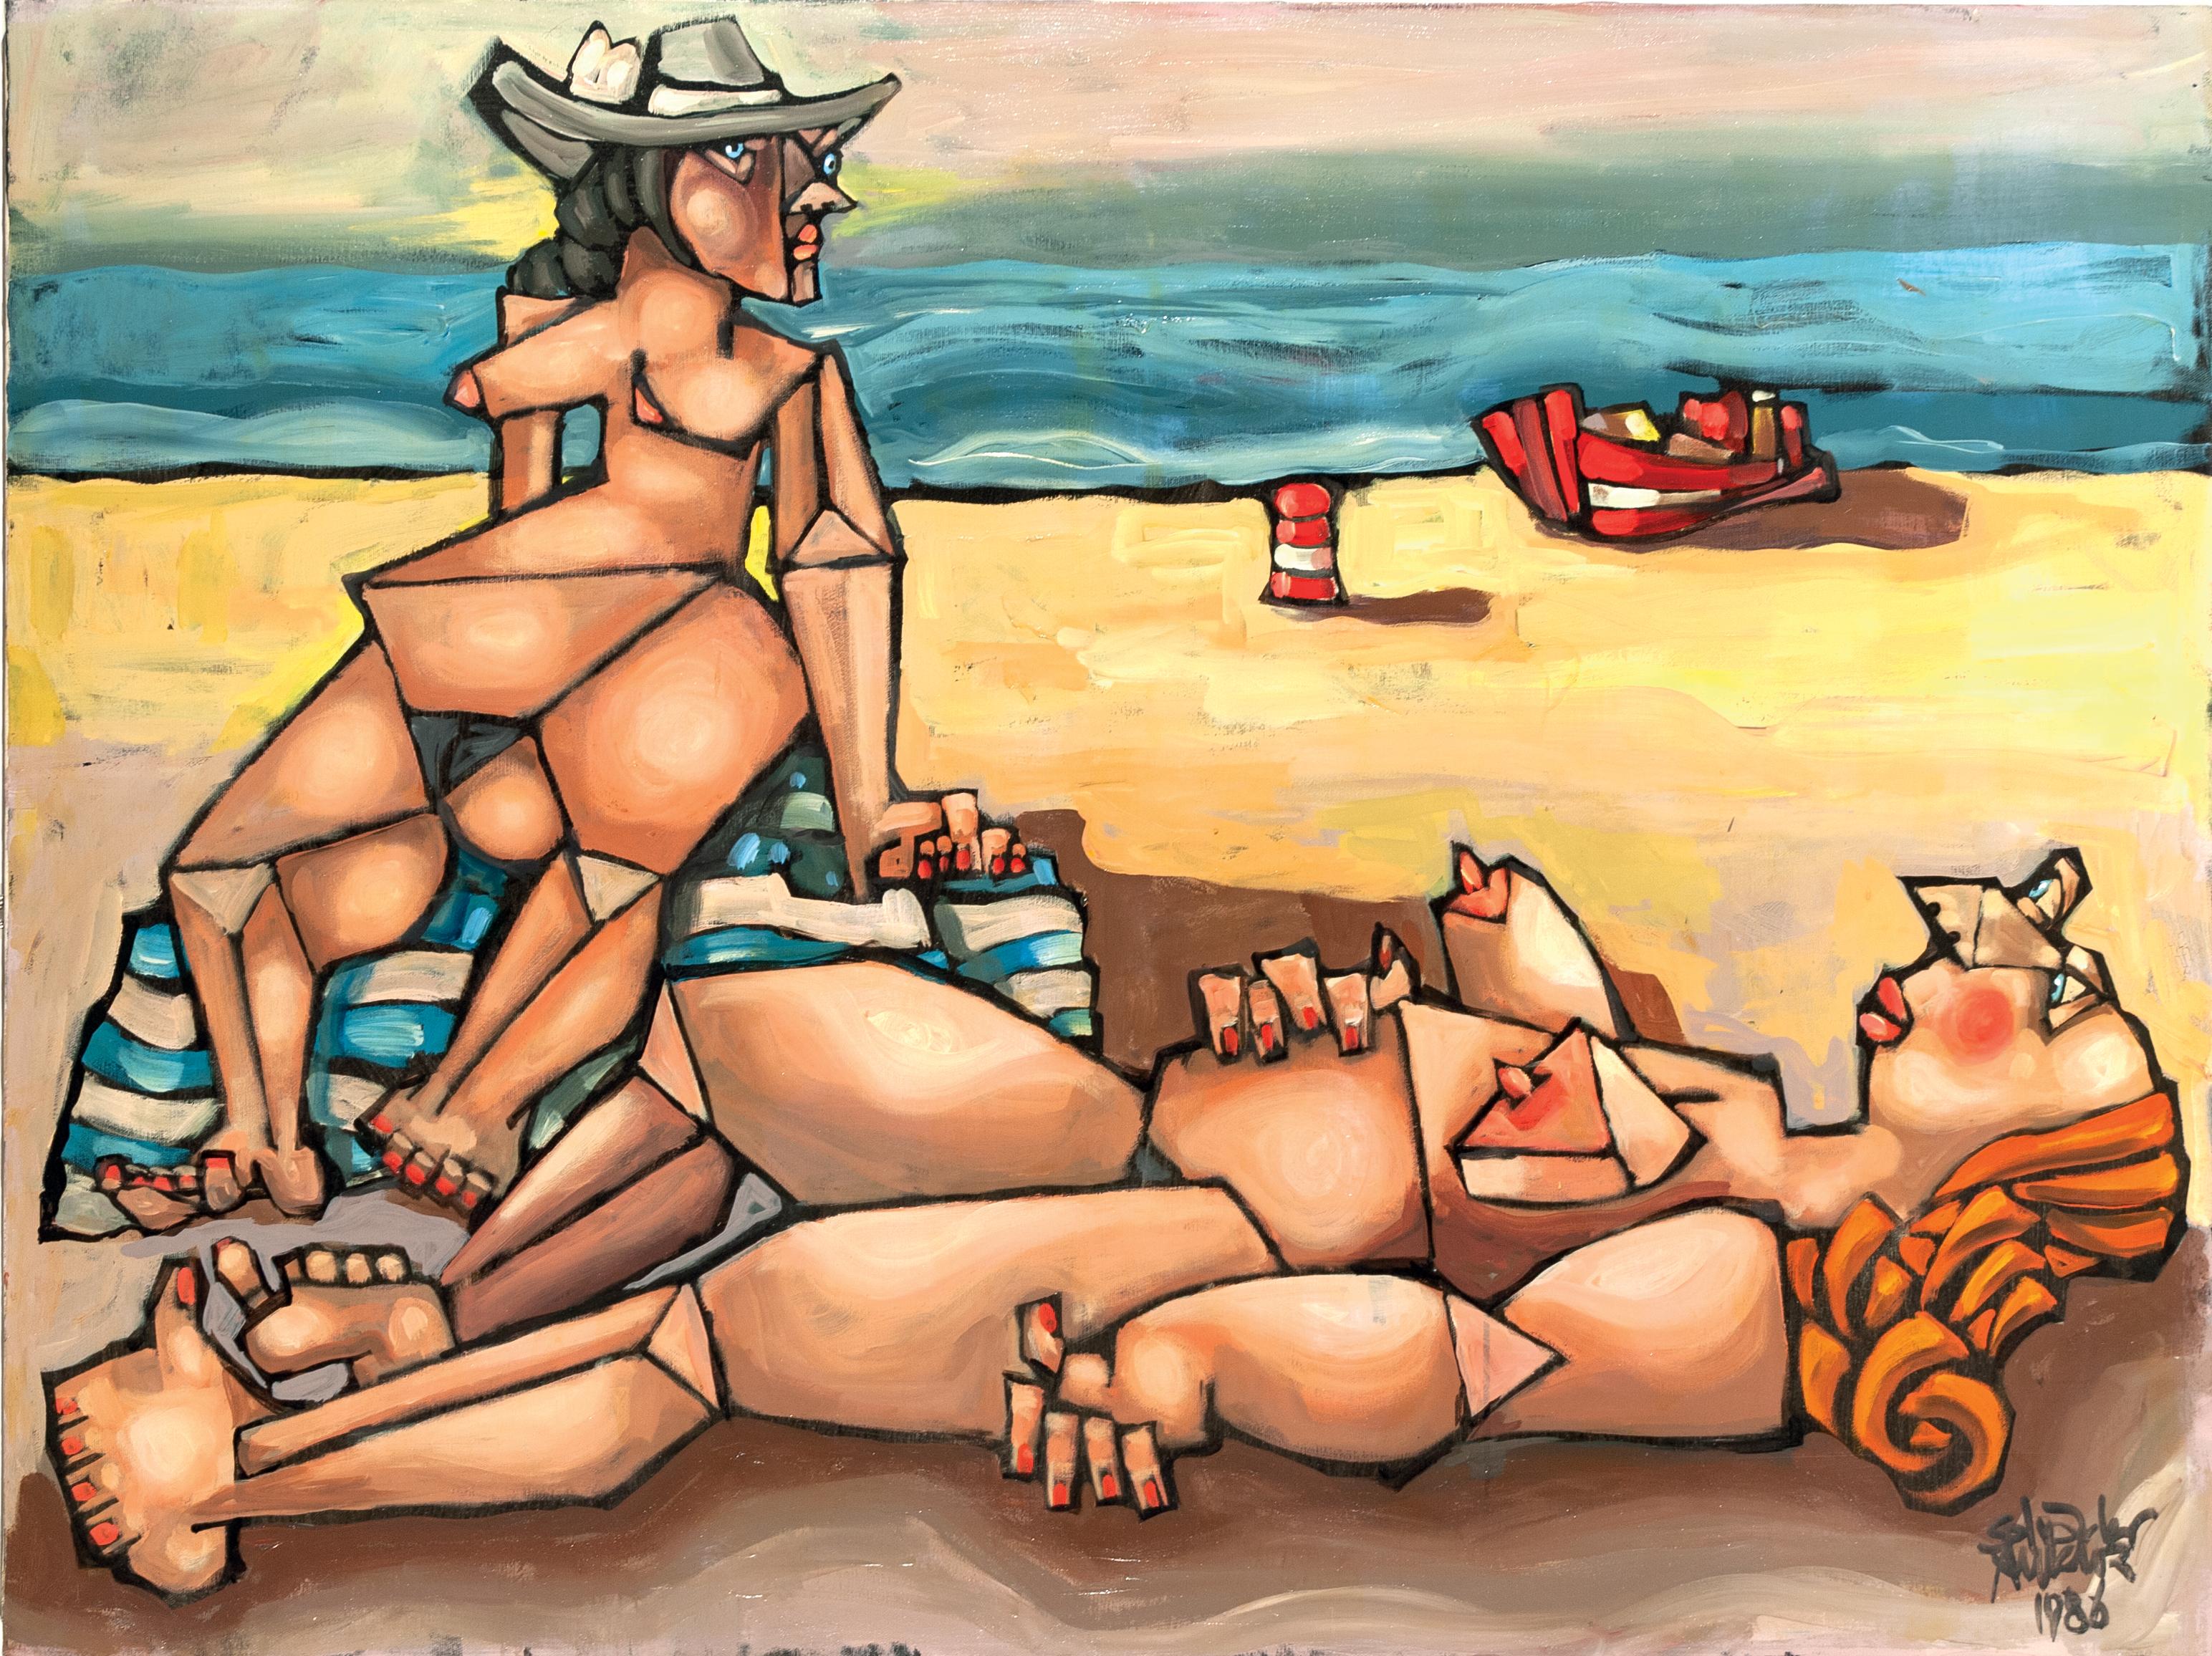 Dies ist ein Meisterwerk von Salvador Aulestia (Barcelona 1915 - Mailand 1994).

Es gibt nur sehr wenige Gemälde wie dieses, mehr wegen ihrer Seltenheit als wegen ihrer Qualität. 

Zwei Frauen am Strand, die, wie der Titel schon sagt, vergeblich